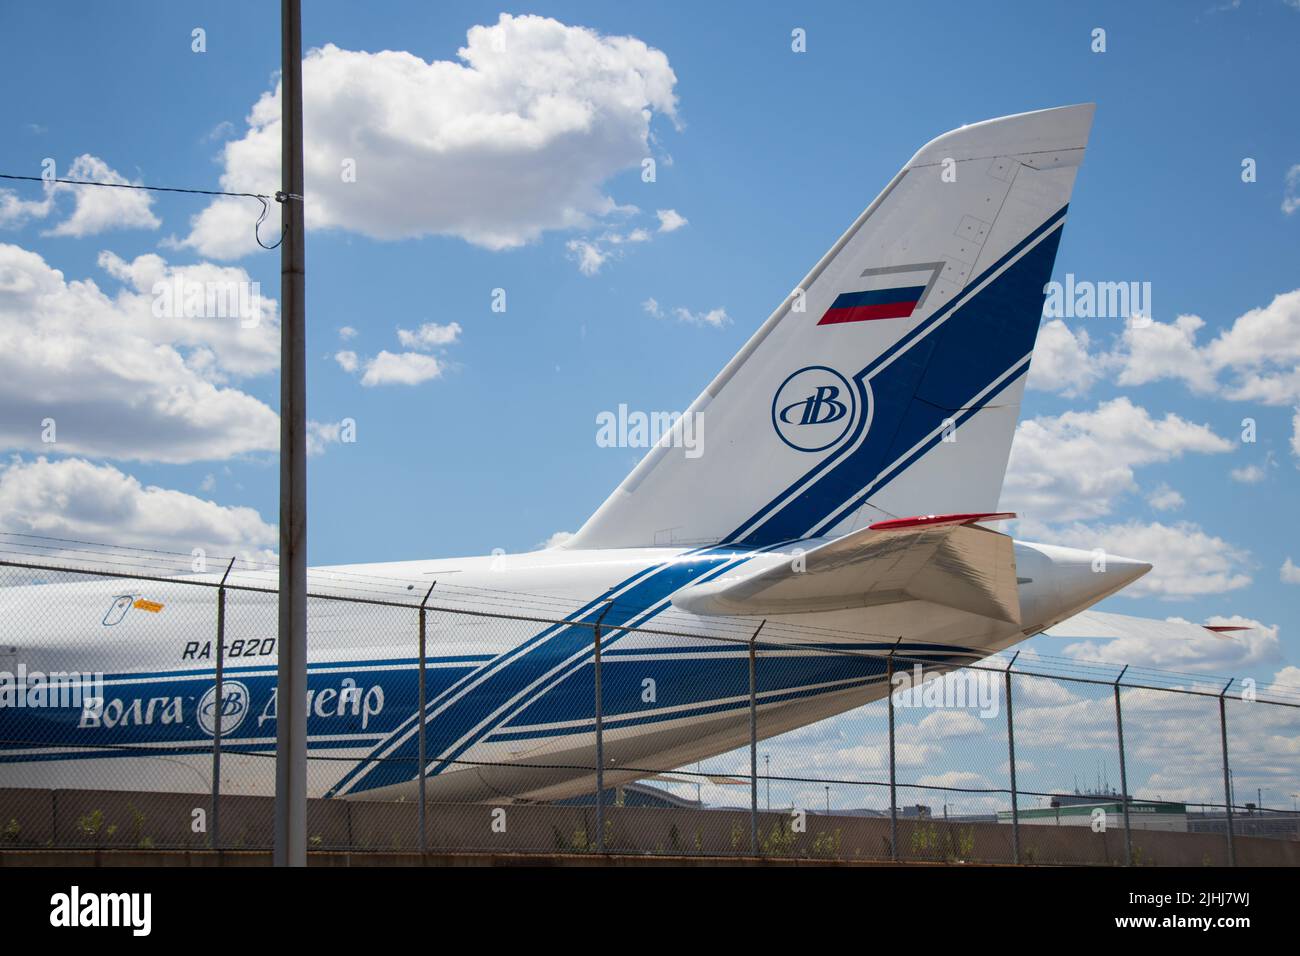 La coda di un aereo da carico Antonov 124 registrato in Russia, di proprietà di Volga-Dnepr, è vista a Toronto durante l'invasione russa dell'Ucraina. Foto Stock